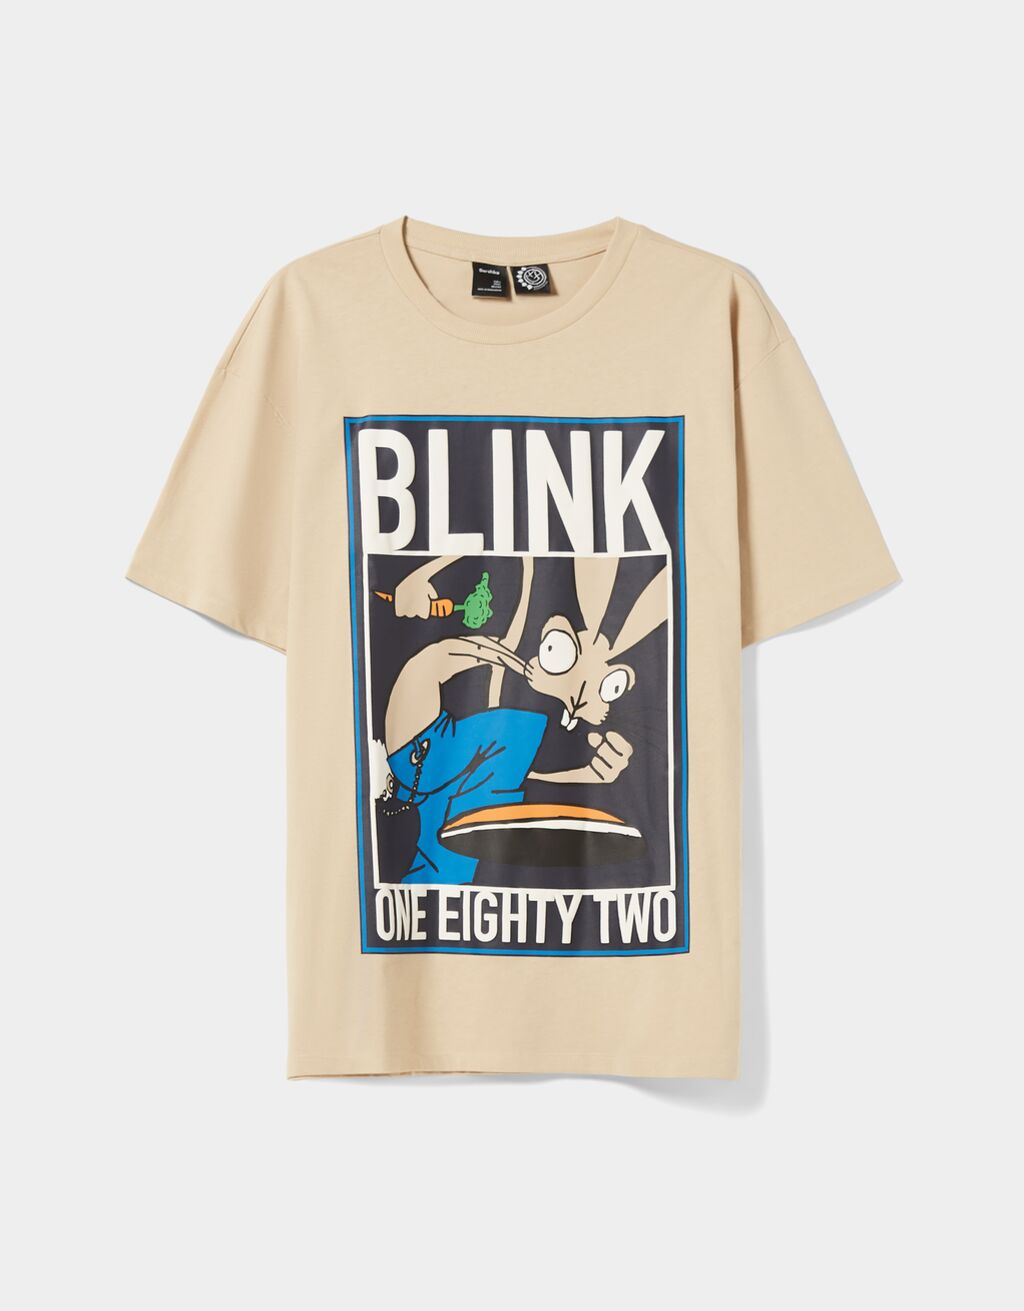 T-shirt manches courtes oversize imprimé Blink 182